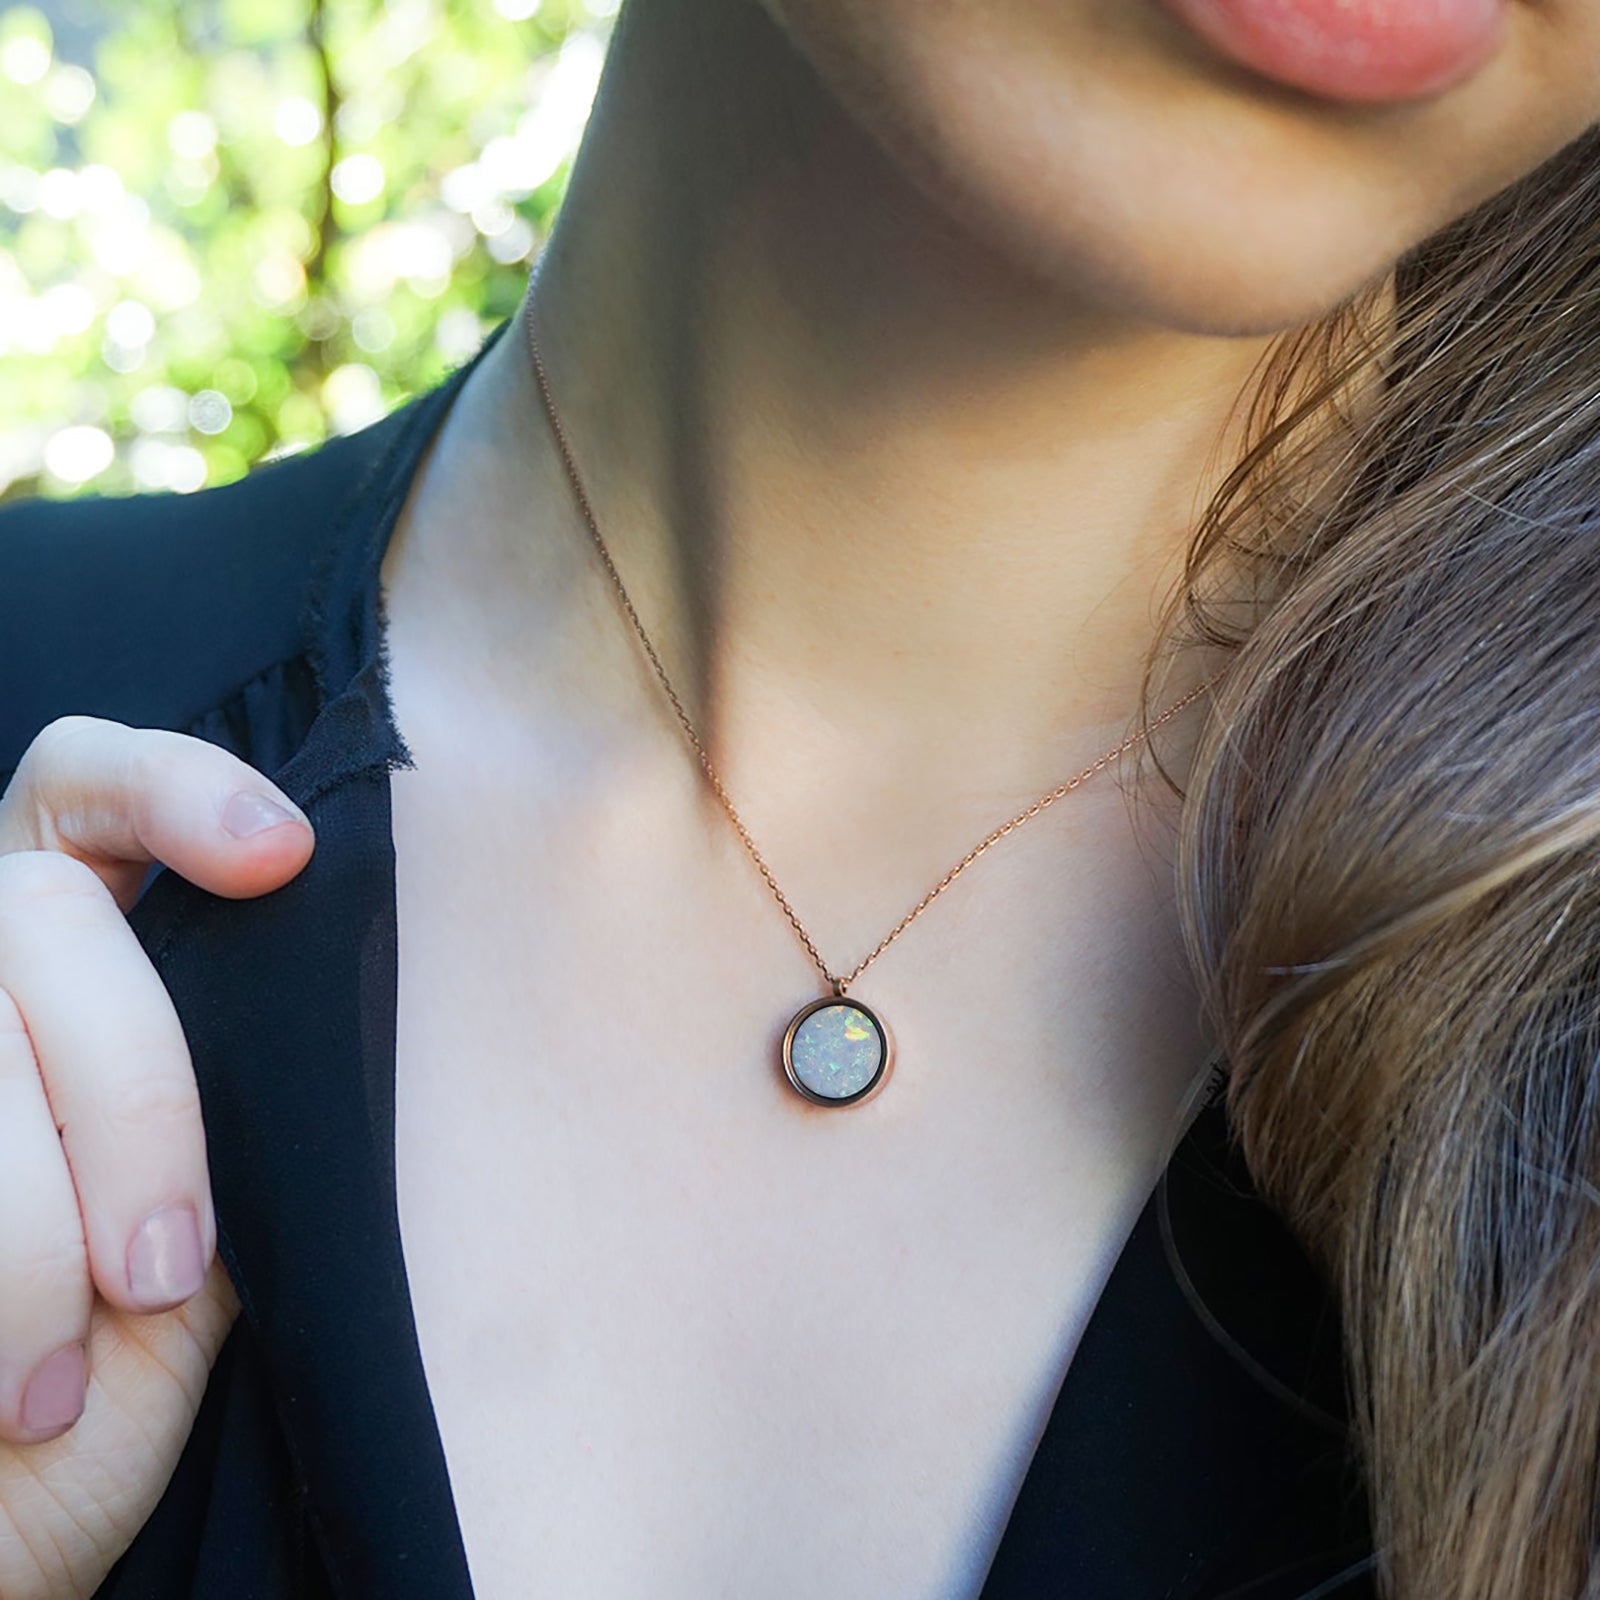 Genuine Australian Sterling Silver Opal Necklace Pendant, 10x8mm Opal,  Jewelry | eBay